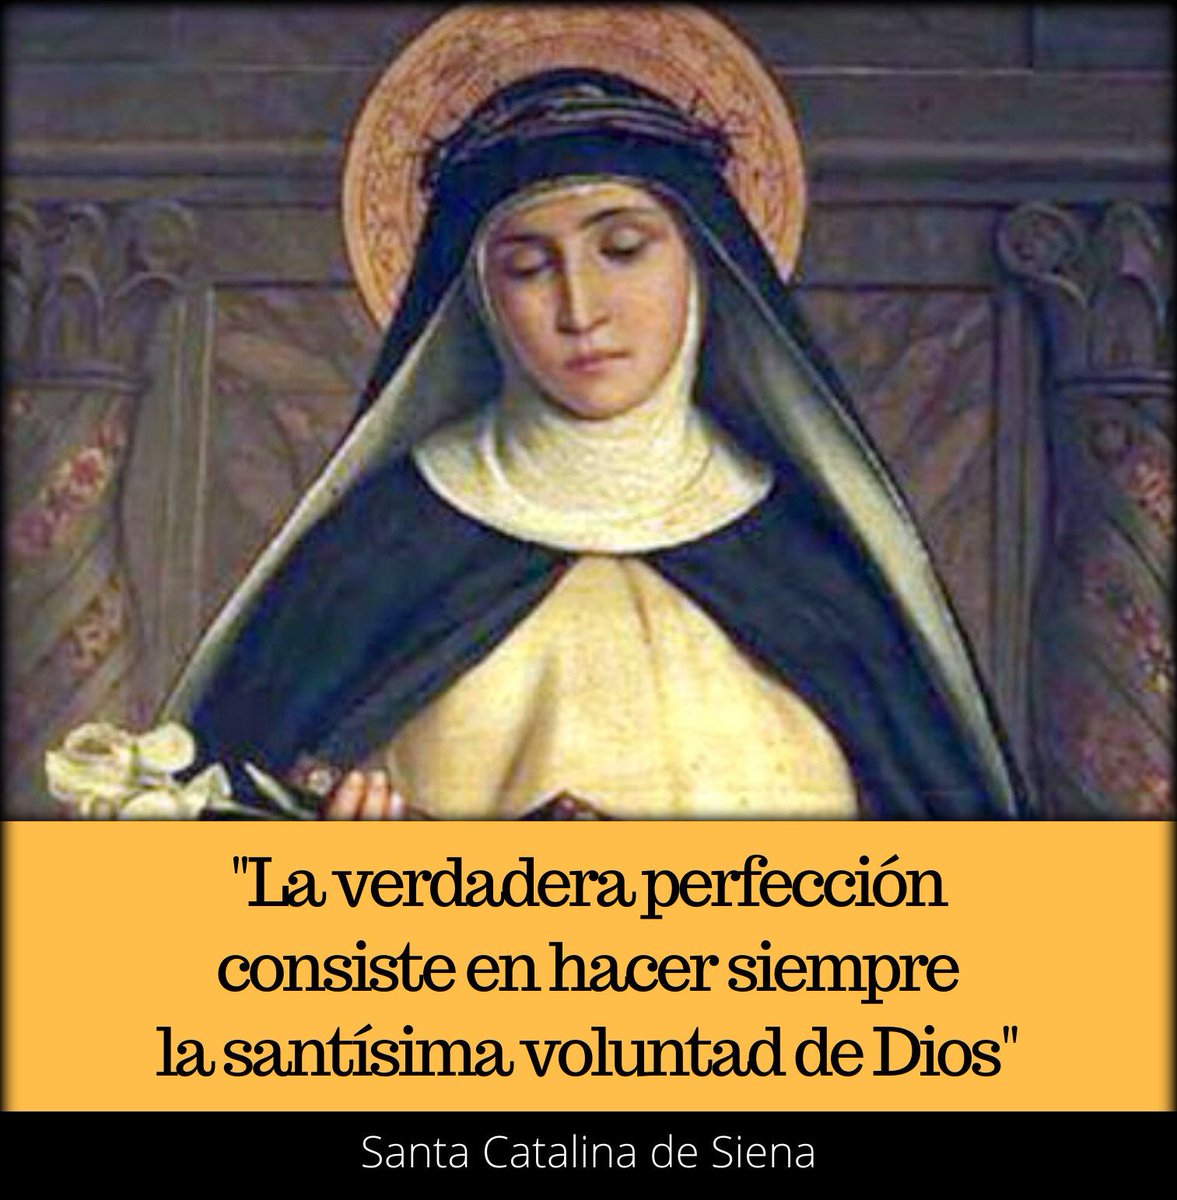 'La verdadera perfección consiste en hacer siempre la santísima voluntad de Dios'. Santa Catalina de Siena